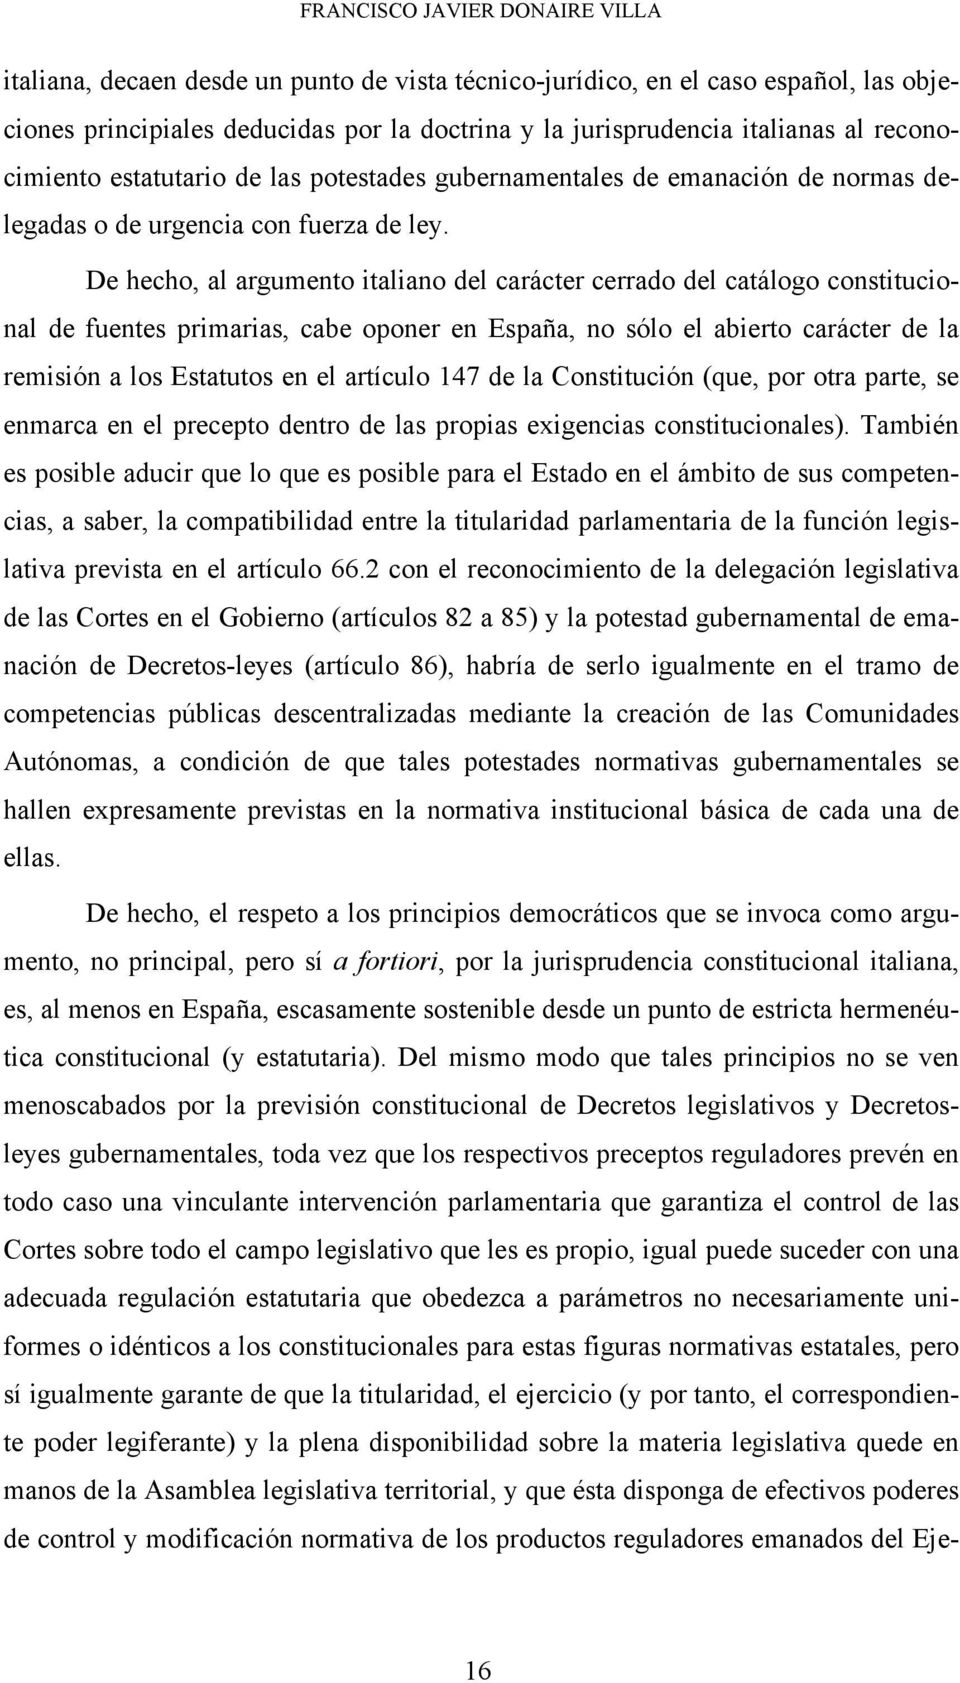 De hecho, al argumento italiano del carácter cerrado del catálogo constitucional de fuentes primarias, cabe oponer en España, no sólo el abierto carácter de la remisión a los Estatutos en el artículo